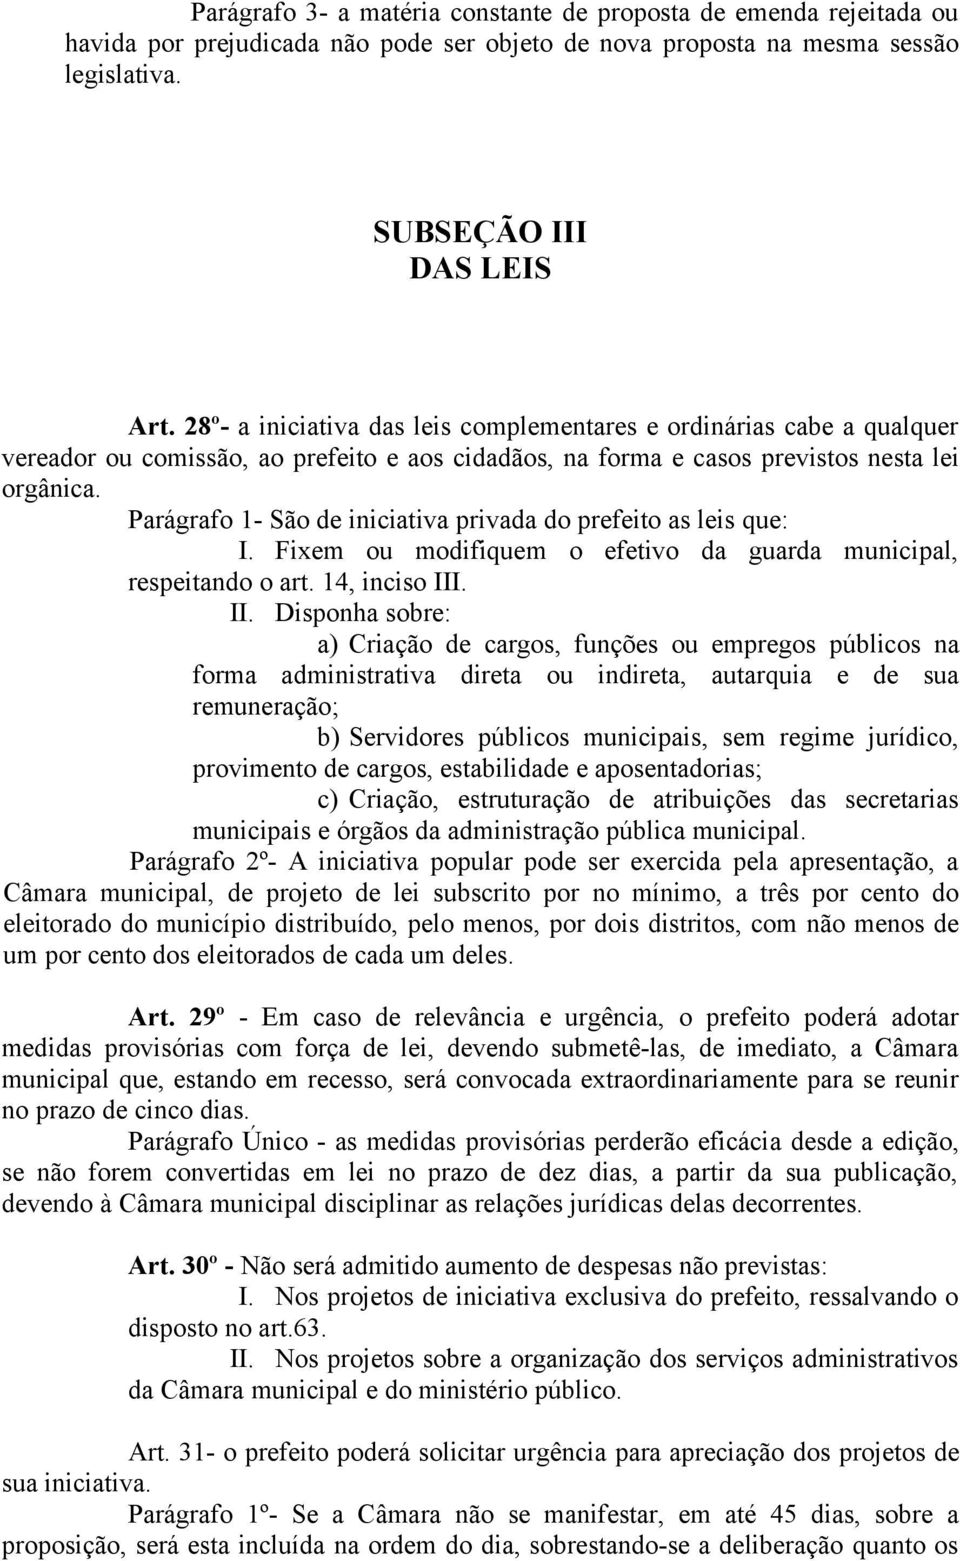 Parágrafo 1- São de iniciativa privada do prefeito as leis que: I. Fixem ou modifiquem o efetivo da guarda municipal, respeitando o art. 14, inciso III